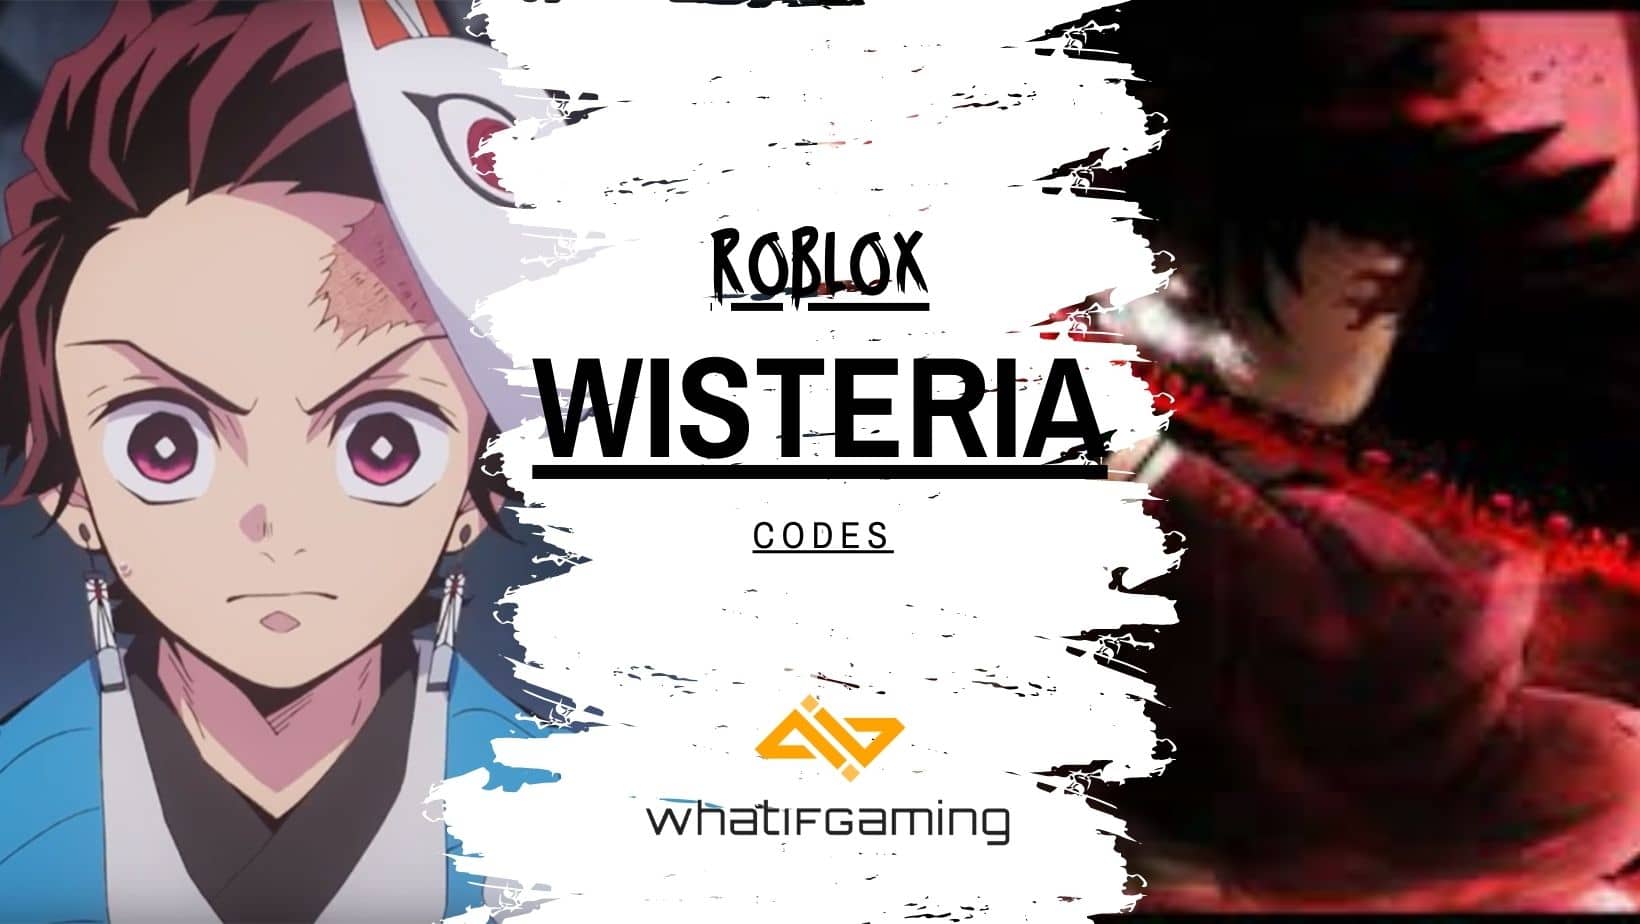 Roblox Wisteria Codes